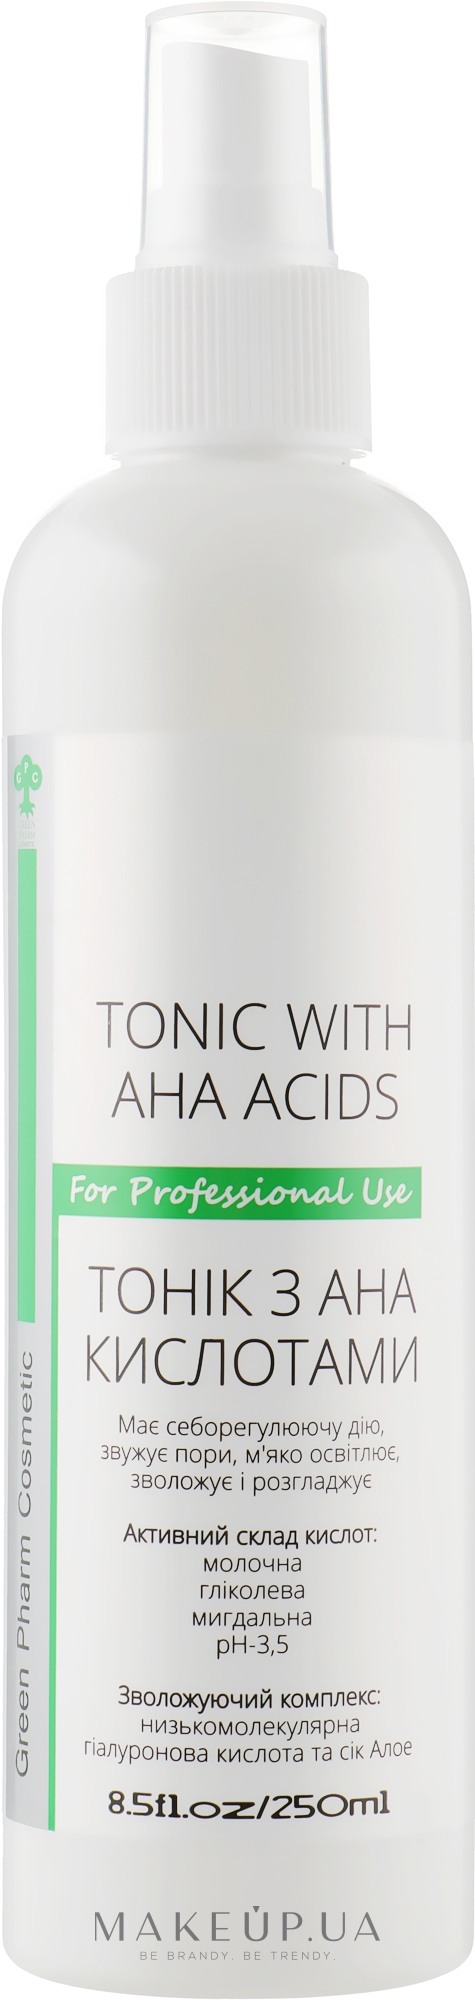 Тоник для лица с AHA кислотами - Green Pharm Cosmetic Tonic With AHA Acids PH 3,5 — фото 250ml